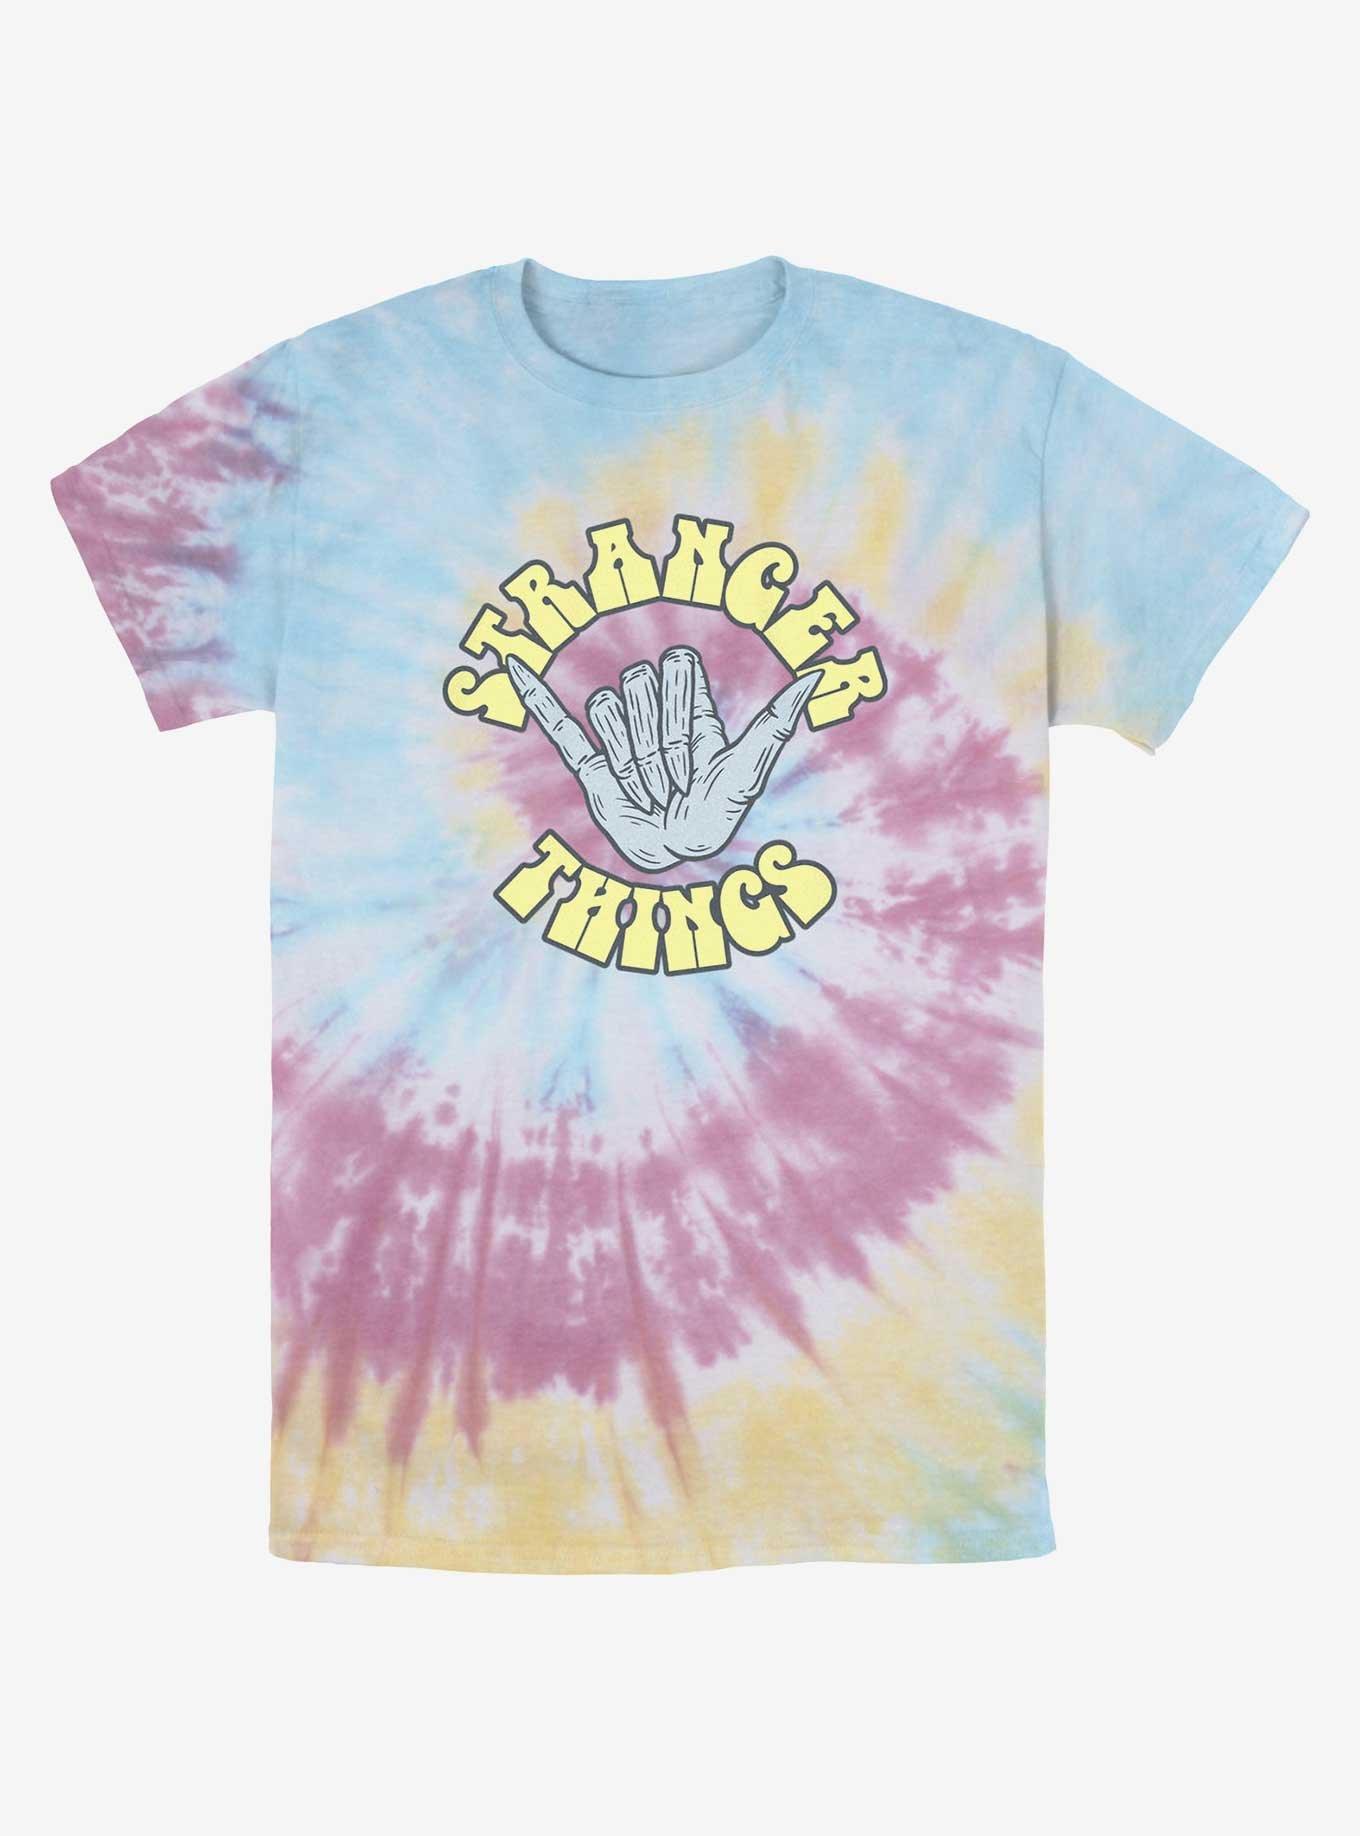 Stranger Things Rad Things Tie-Dye T-Shirt, BLUPNKLY, hi-res